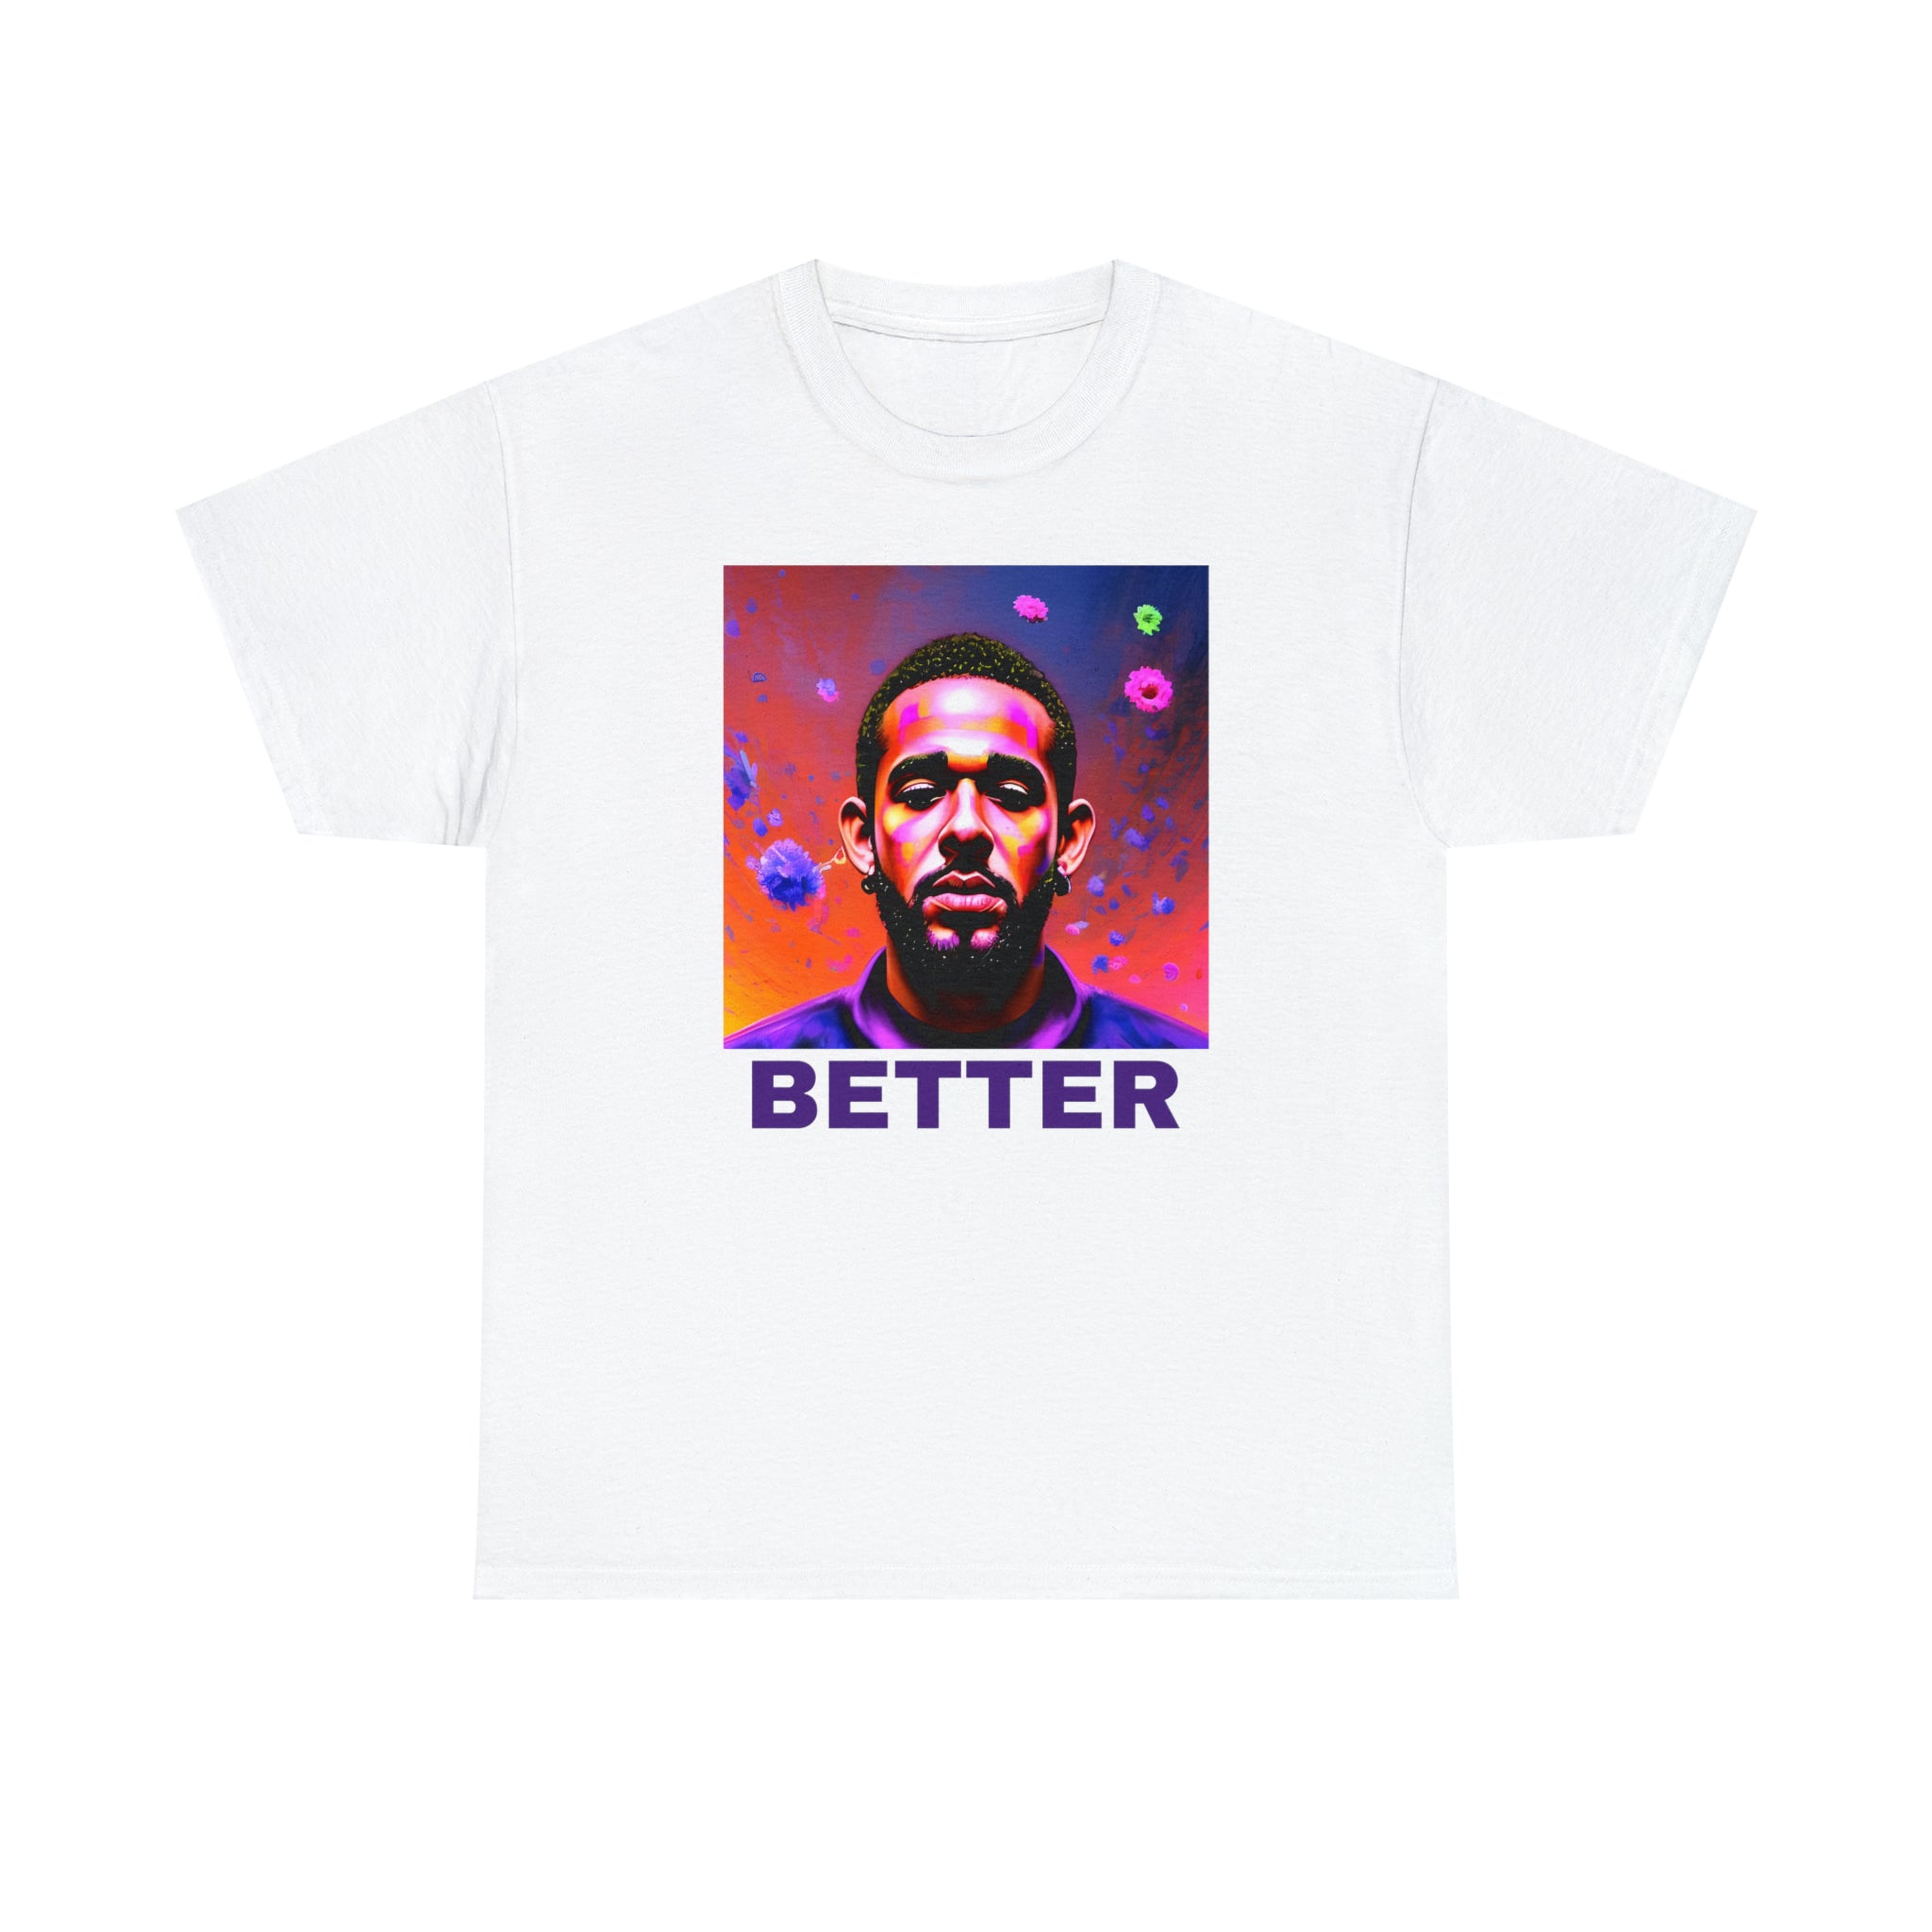 "BETTER" T-shirt